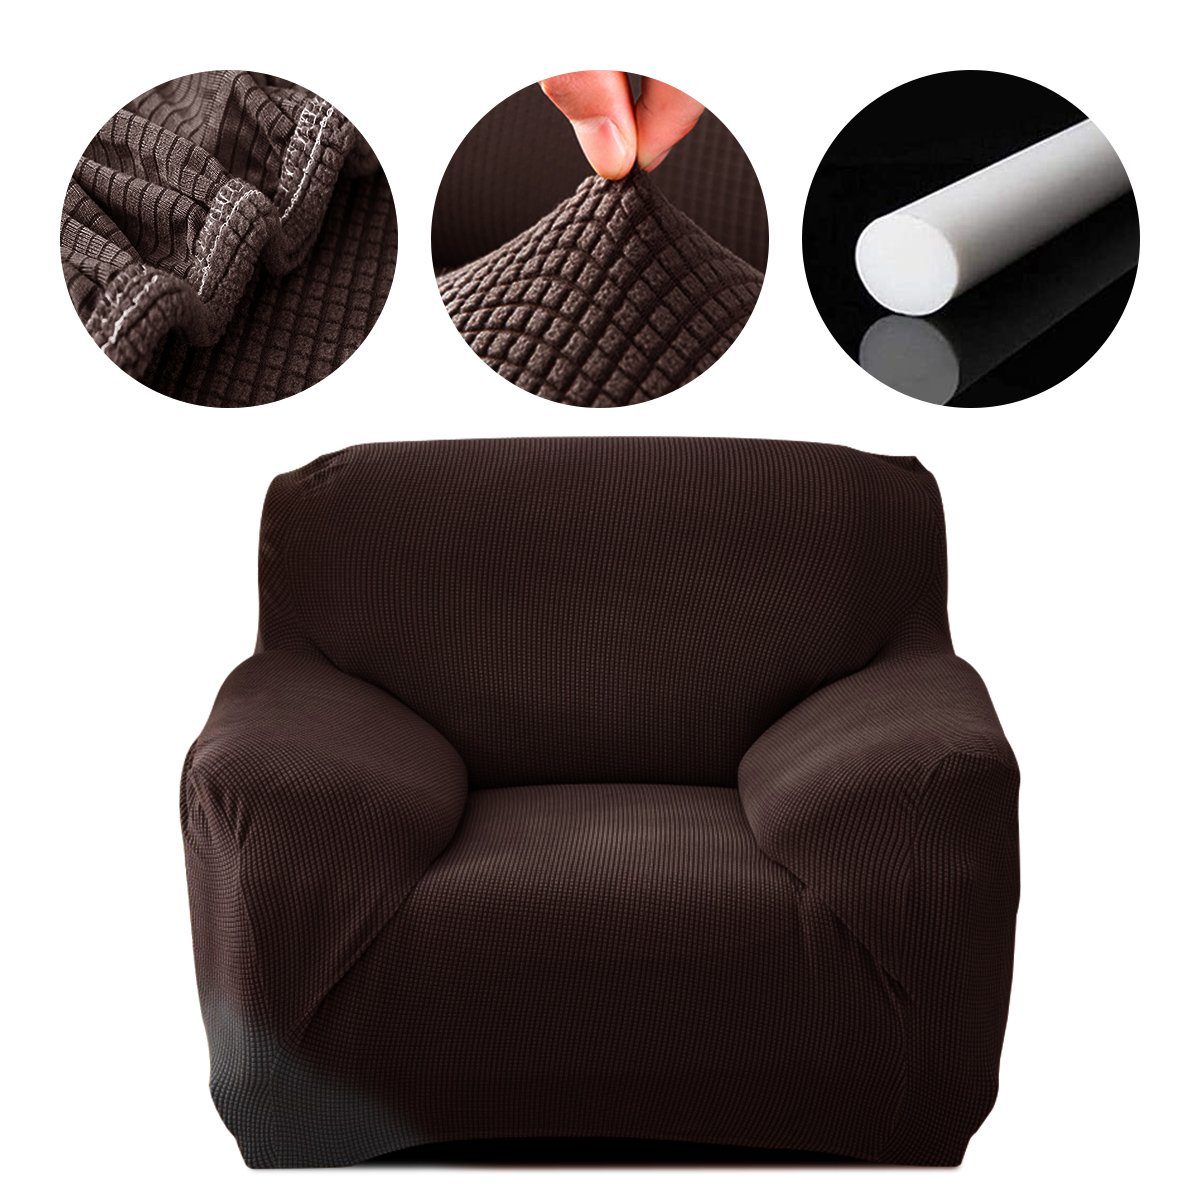 Sofahusse, 7Magic, Stretch Sofabezug Elastische Couchbezug Sofa Abdeckung Braun